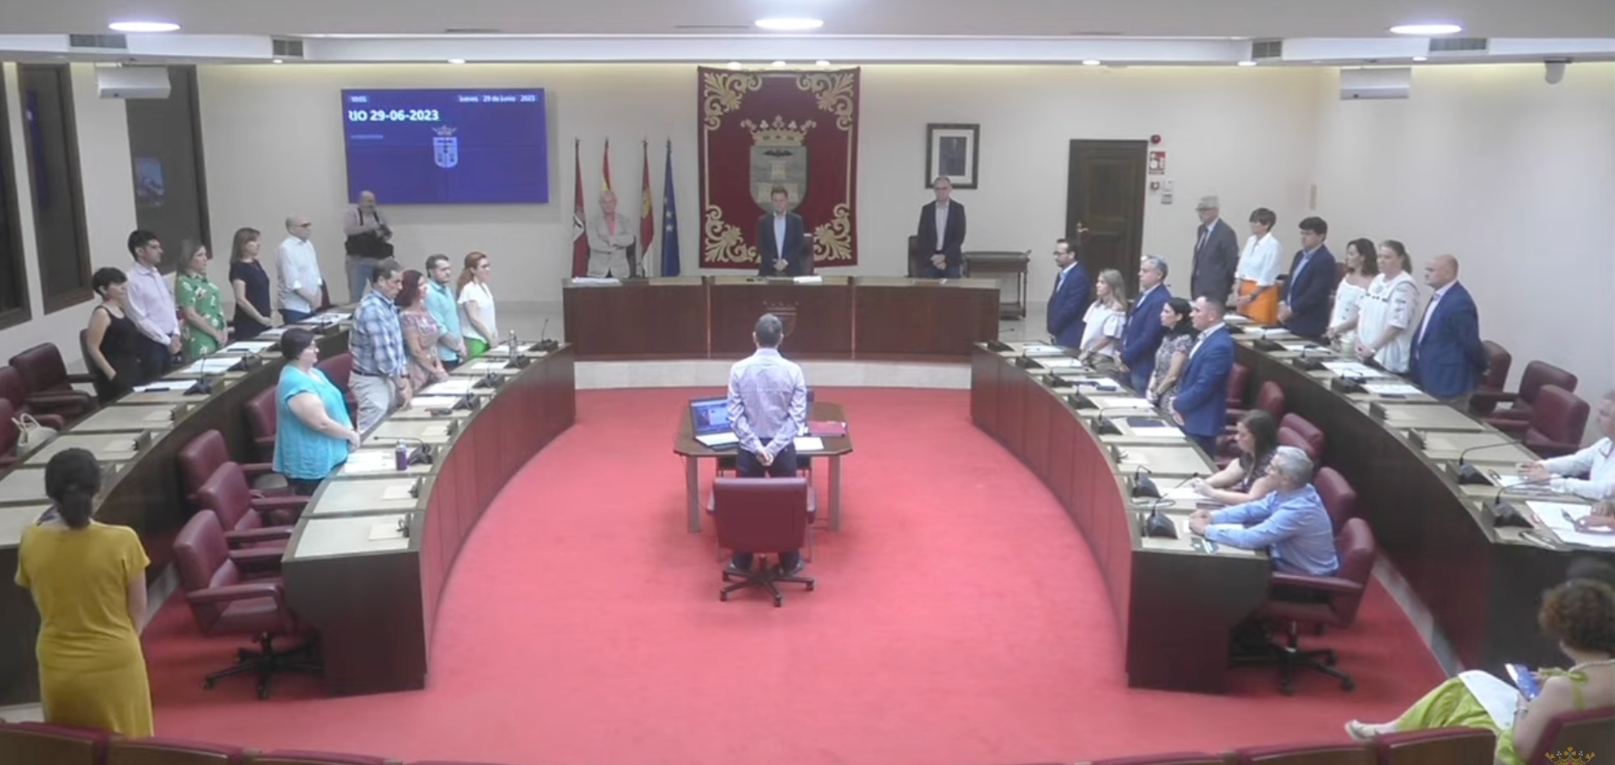 El Ayuntamiento de Albacete guarda un minuto de silencio por las víctimas de violencia de género sin Vox.